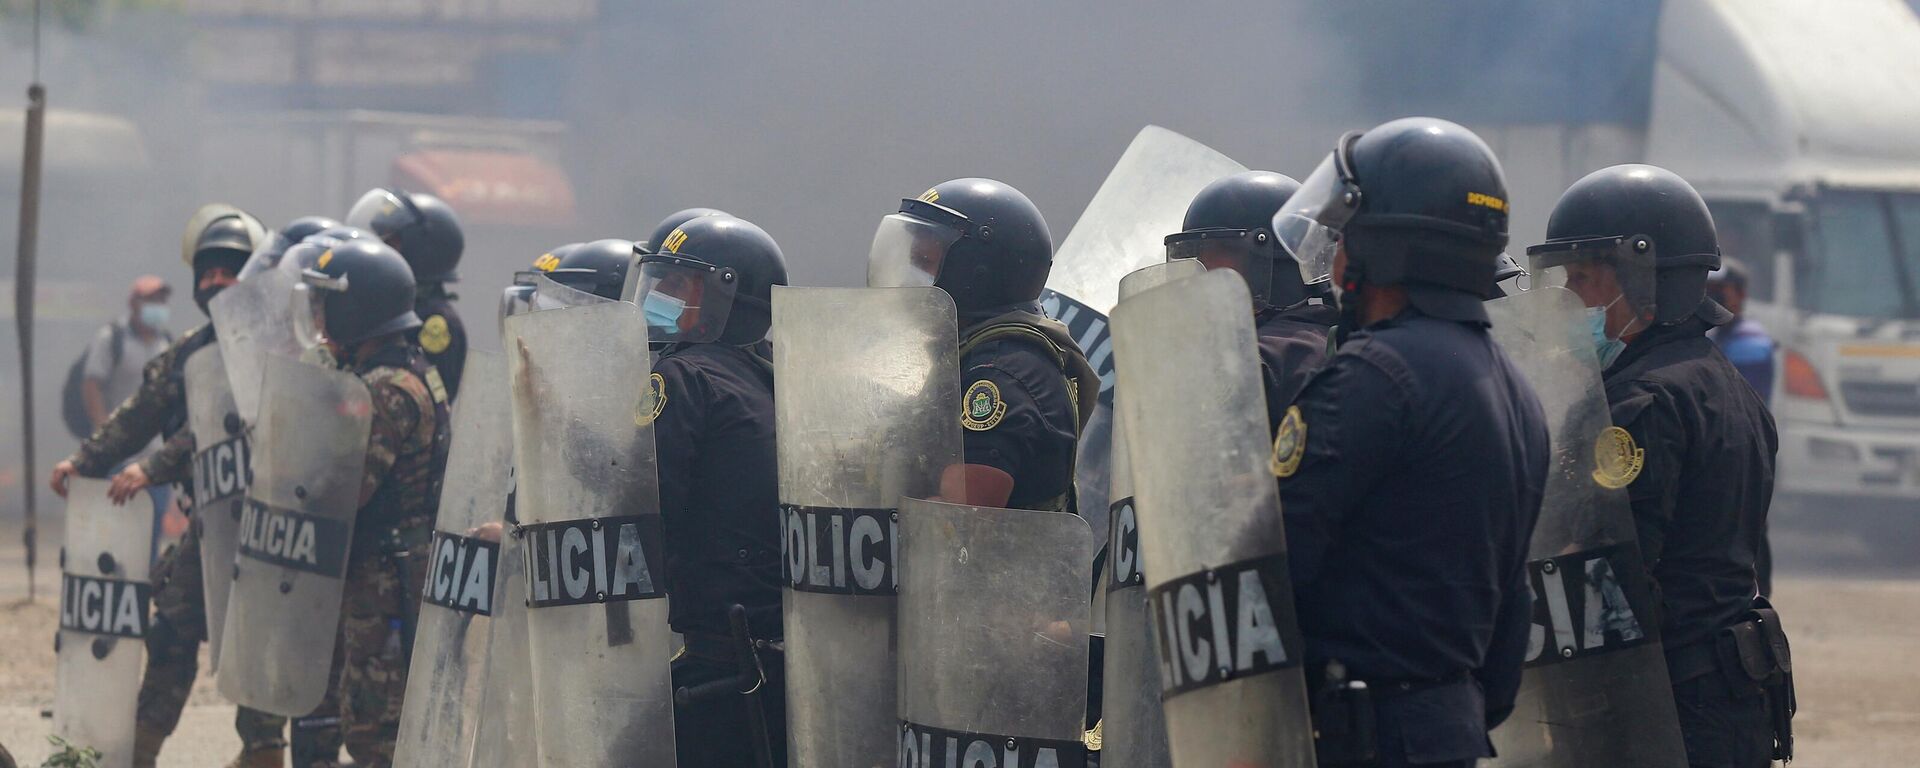 Полиция противостоит демонстрантам во время столкновений в Перу - Sputnik Mundo, 1920, 05.04.2022